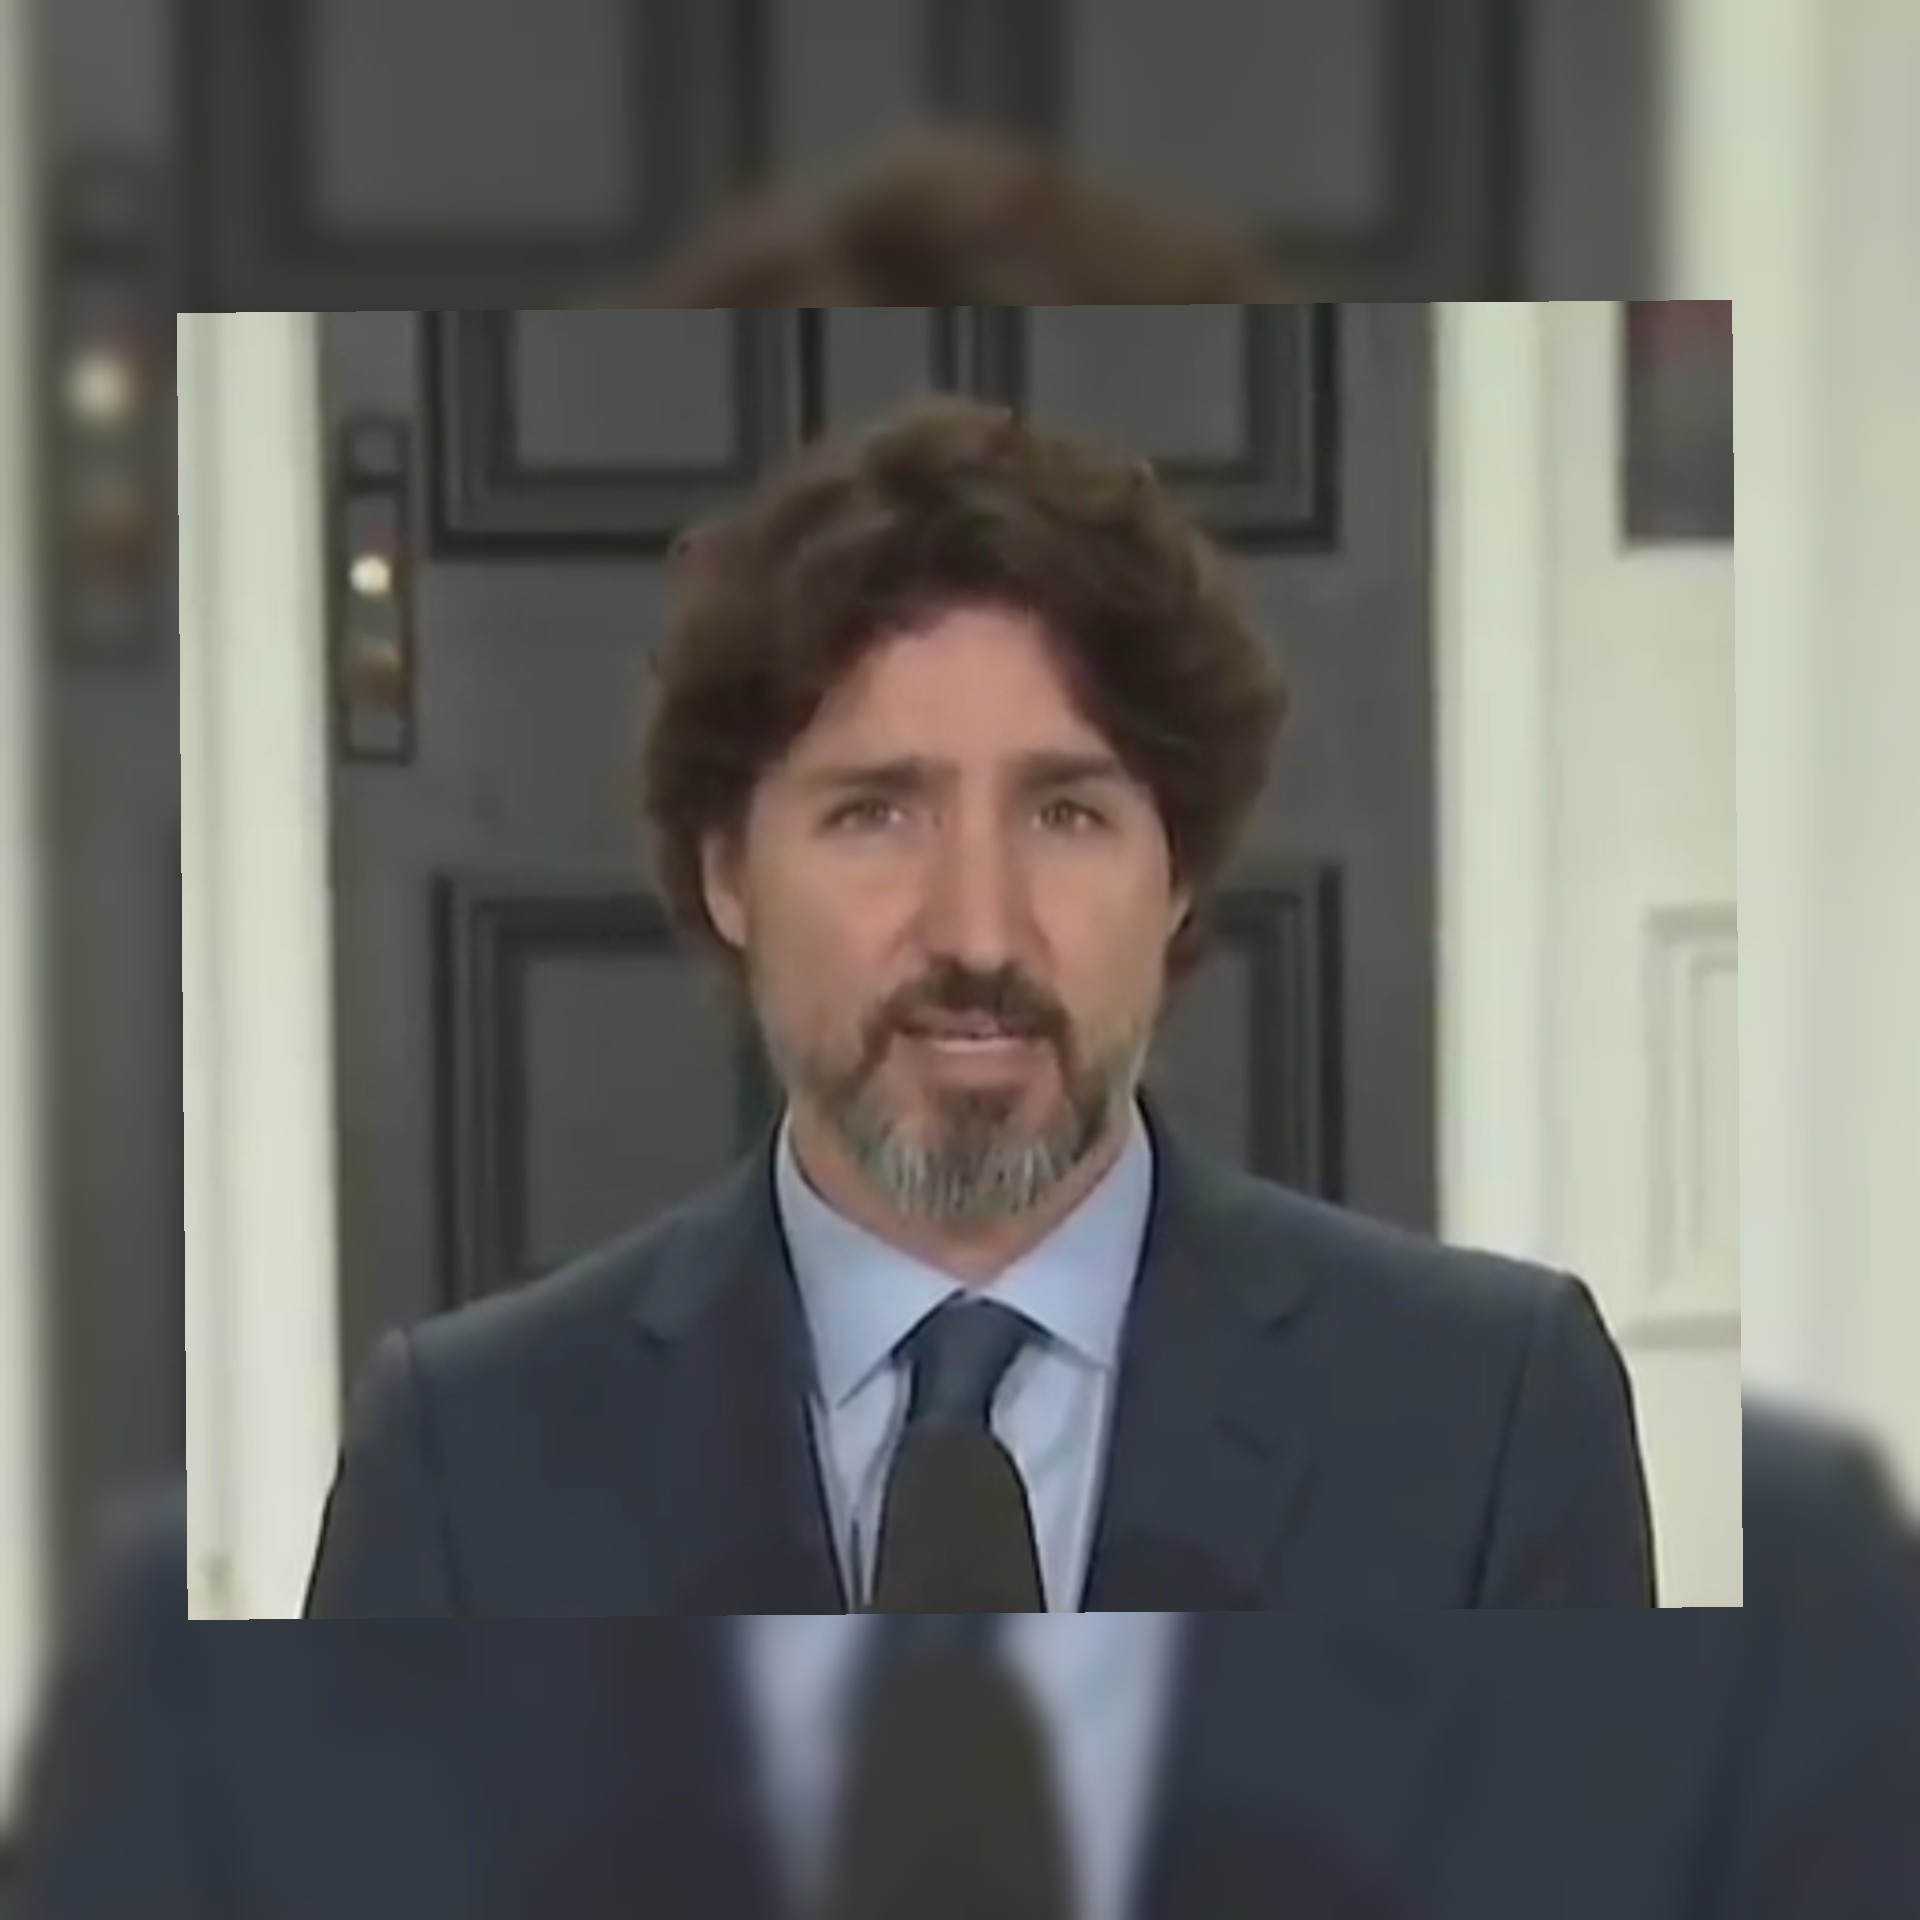 بالفيديو/رئيس وزراء كندا يقف صامتا مدة من الزمن بعد سؤال صحفي عن ترامب